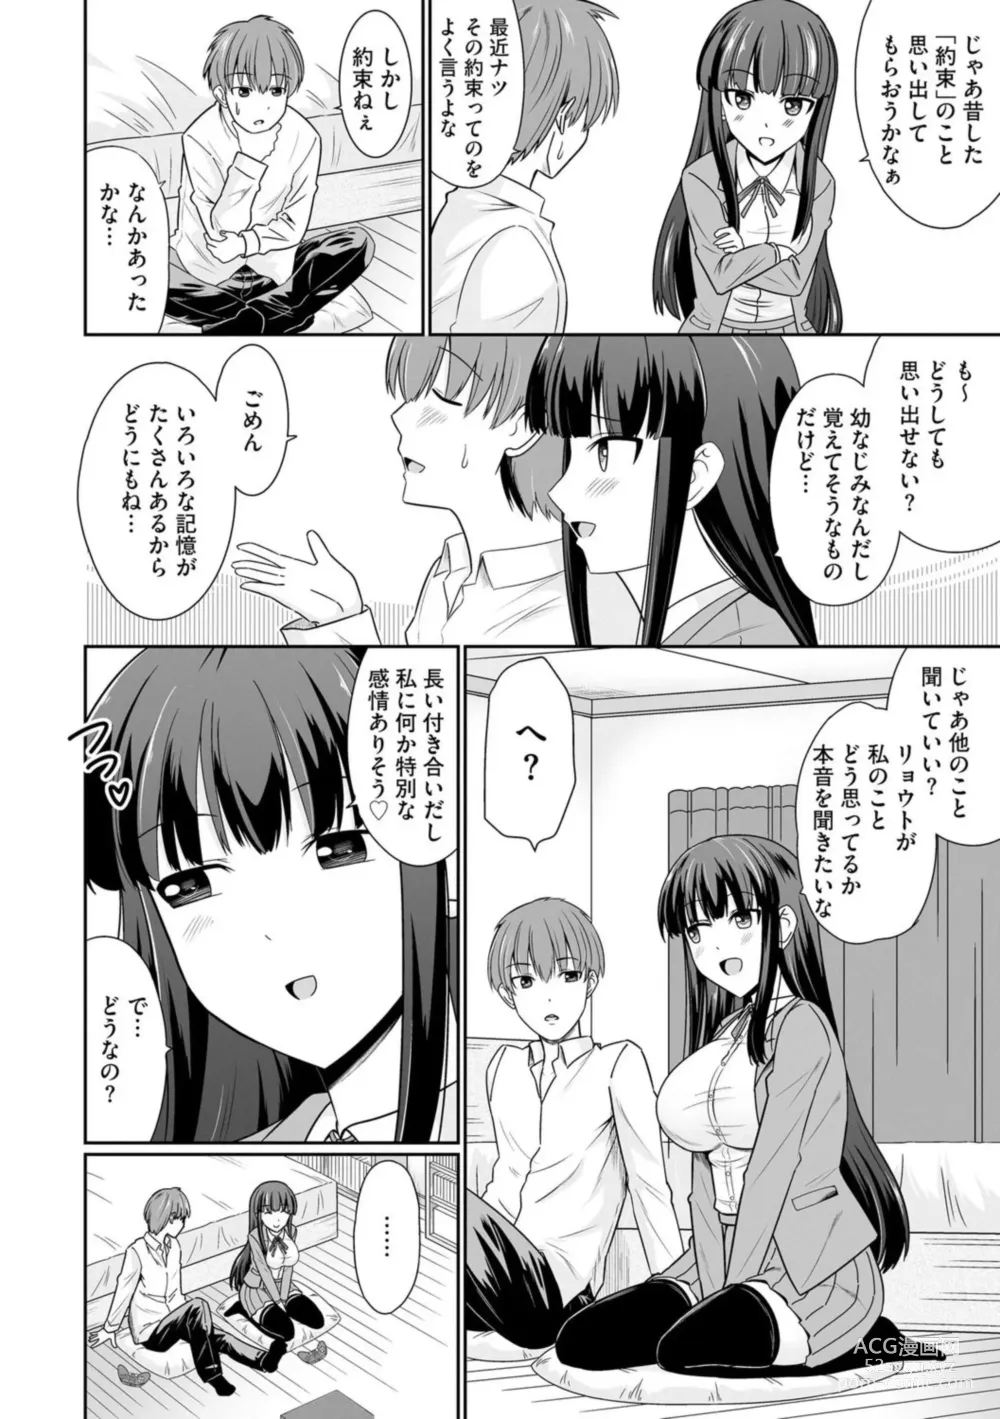 Page 4 of manga Ichiban wa Watashi ni Kimete 1